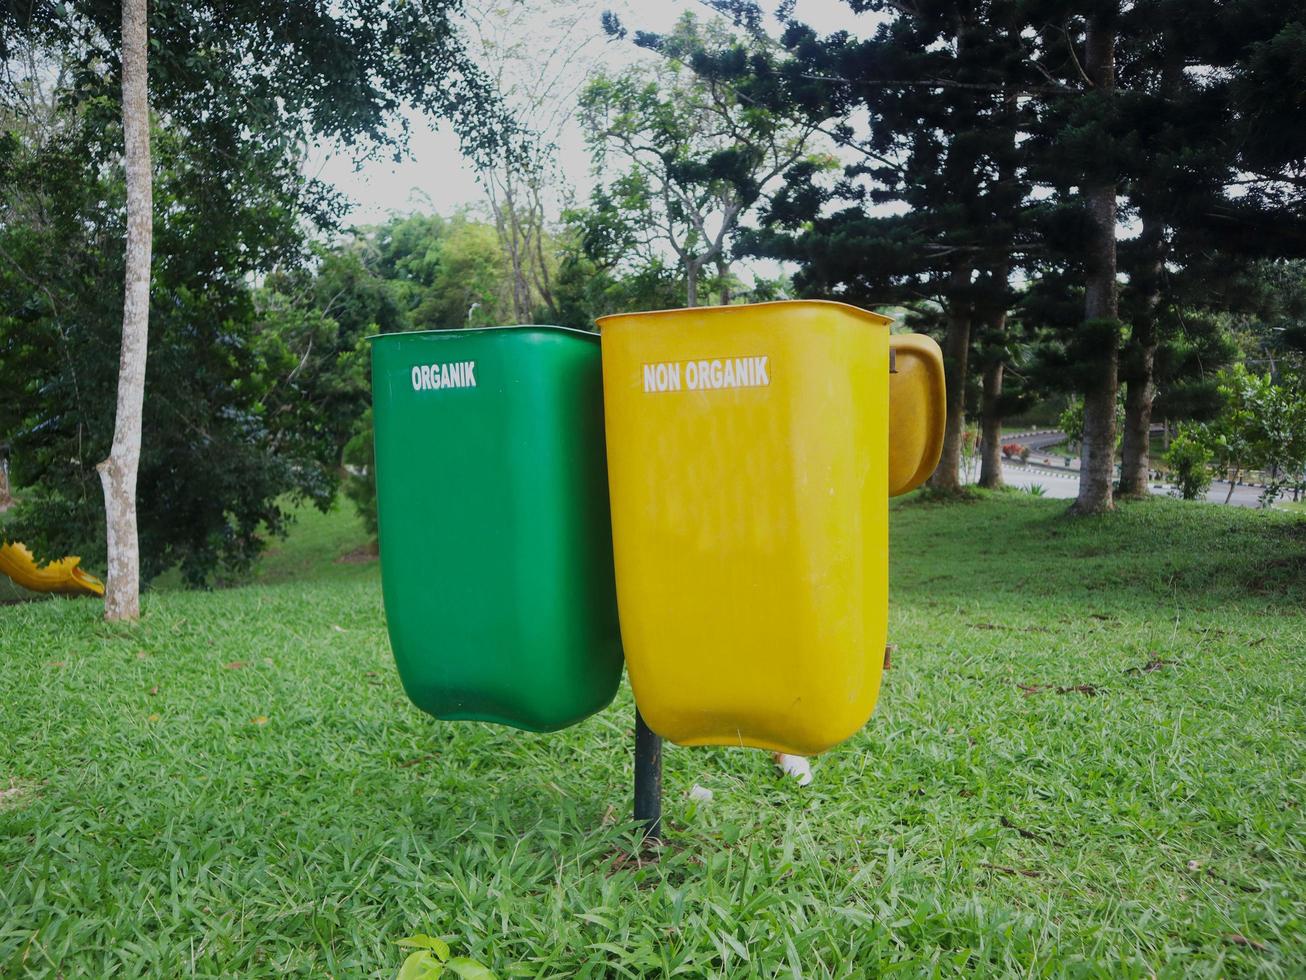 poubelles jaunes pour les déchets non organiques non recyclables et vertes pour les déchets organiques recyclables. placé dans un parc photo